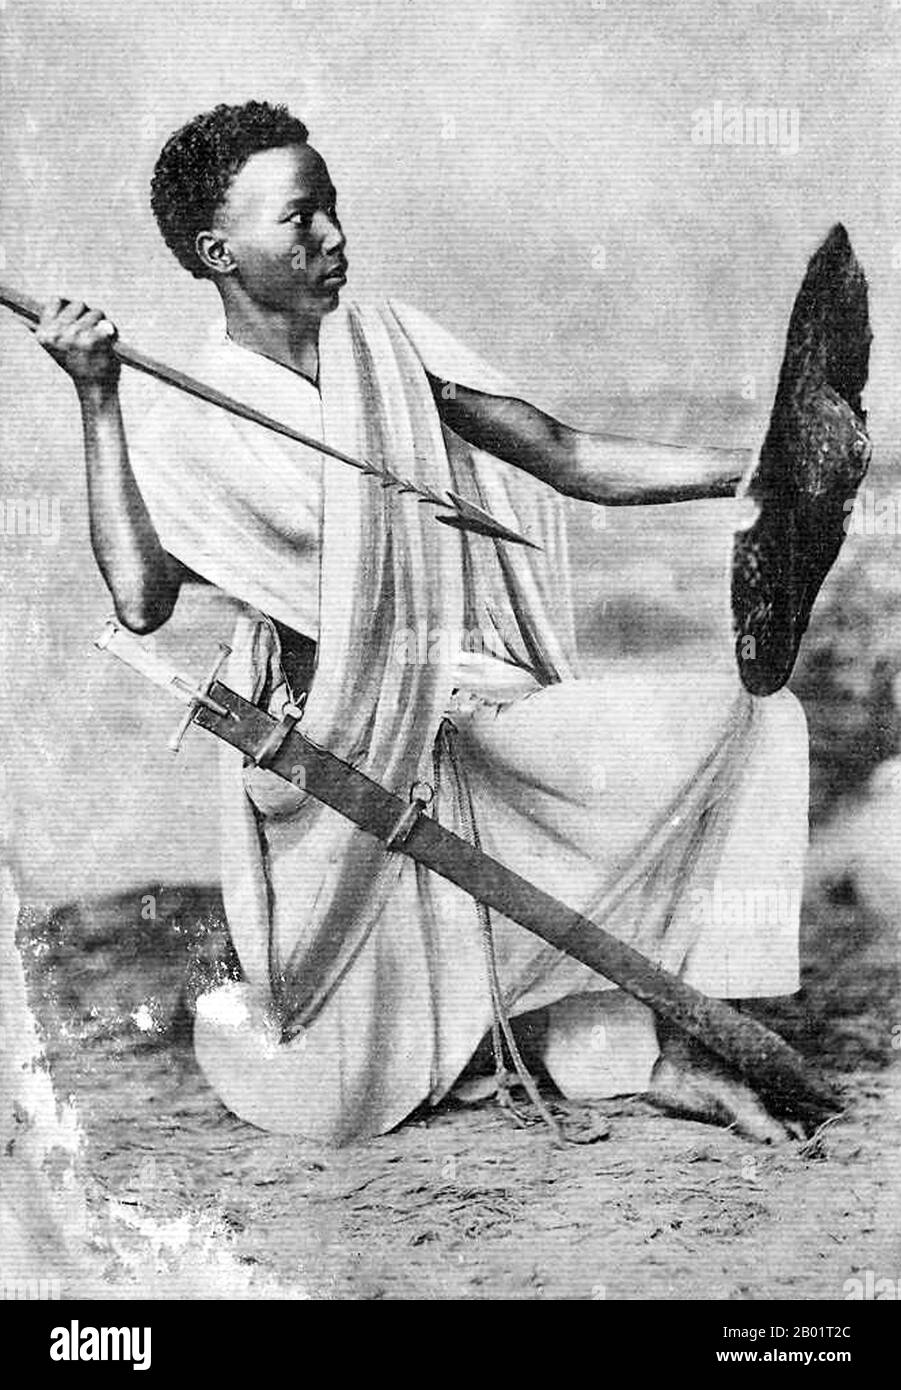 Mali: Ein „junger sudanesischer Krieger“ (aus dem ehemaligen französischen Soudan), Anfang des 20. Jahrhunderts. Der Französische Sudan war eine Kolonie in Französisch-Westafrika, die zwei getrennte Existenzperioden hatte, zuerst von 1890 bis 1899, dann von 1920 bis 1960, als das Territorium zur unabhängigen Nation Mali wurde. Stockfoto